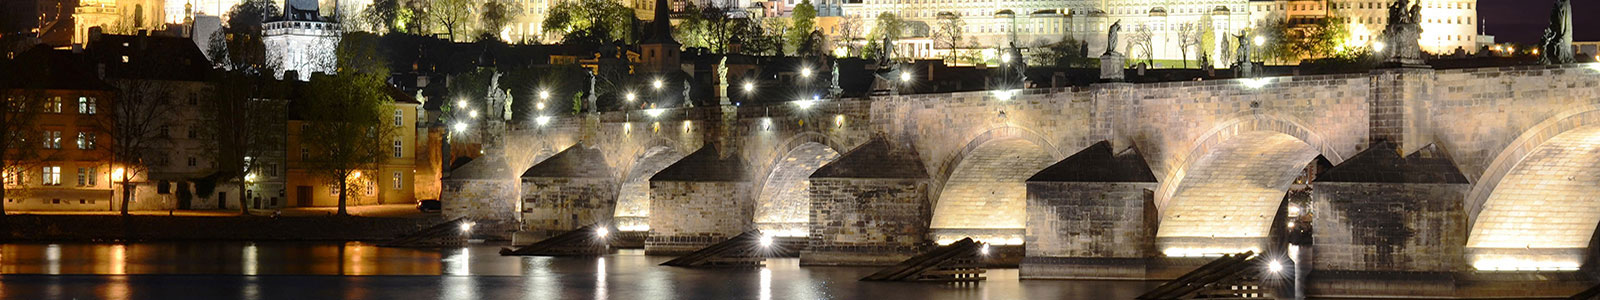 №745 - Каменный мост в Праге